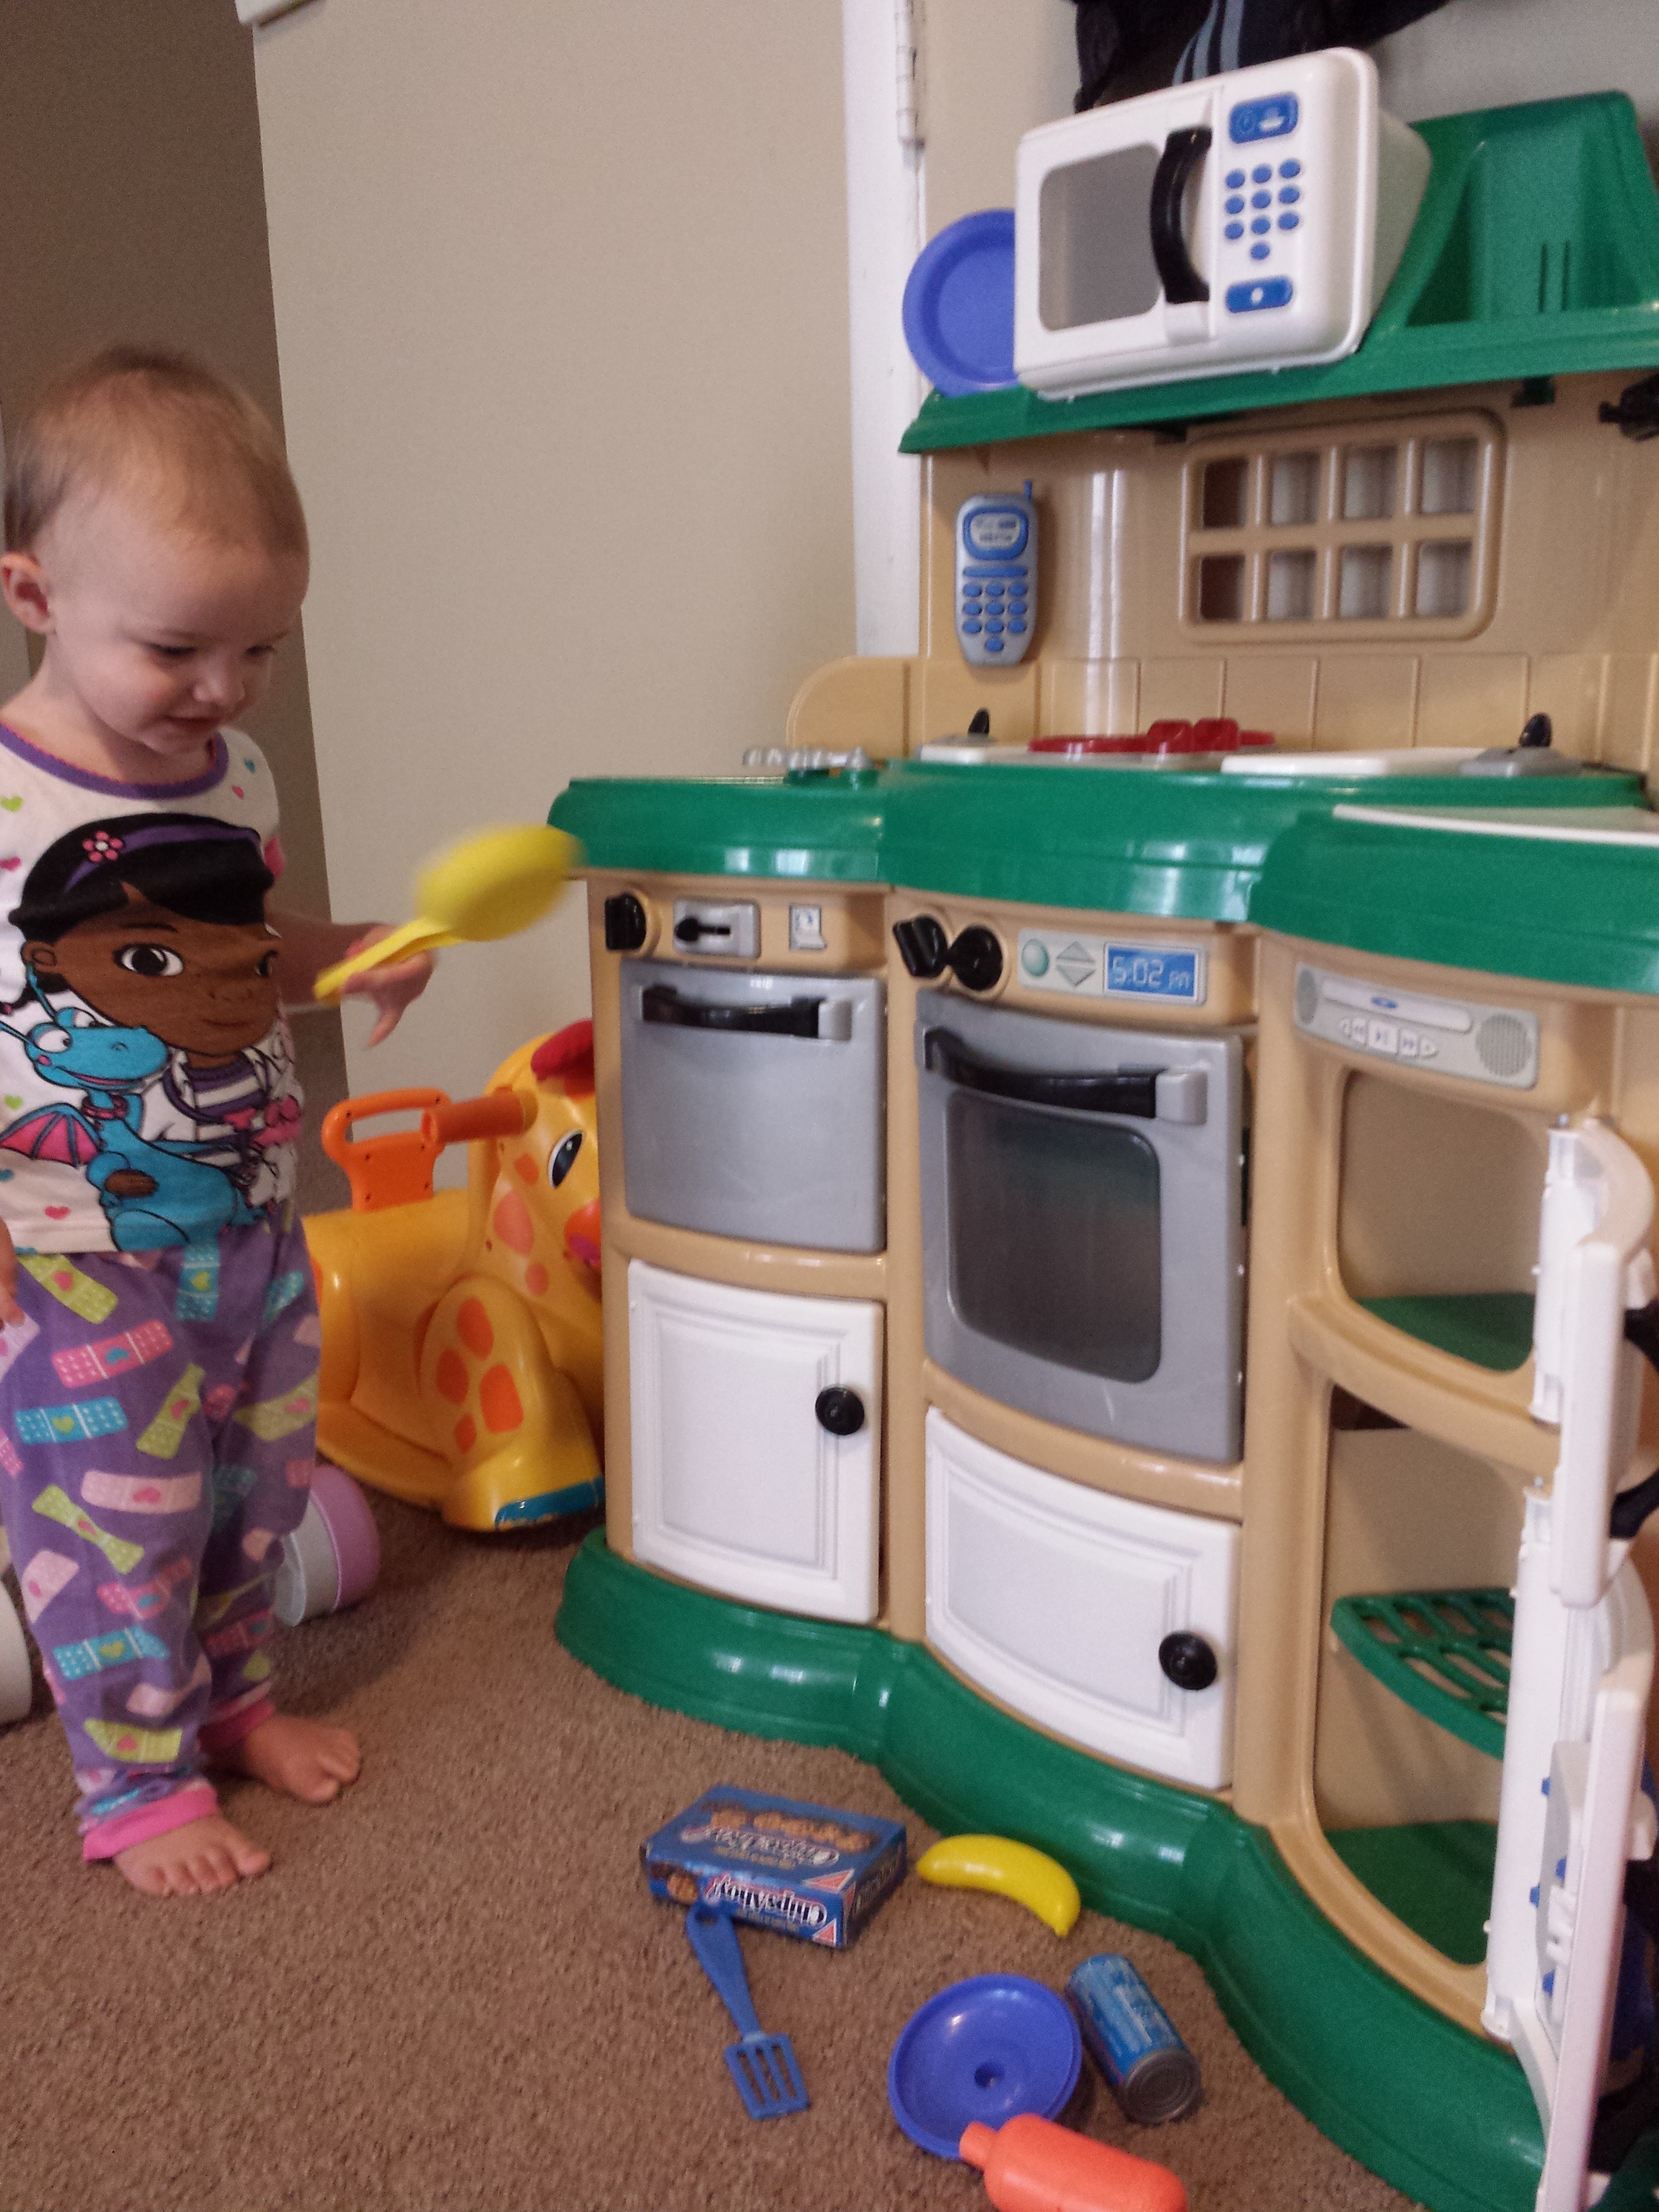 Arianna's new toy kitchen